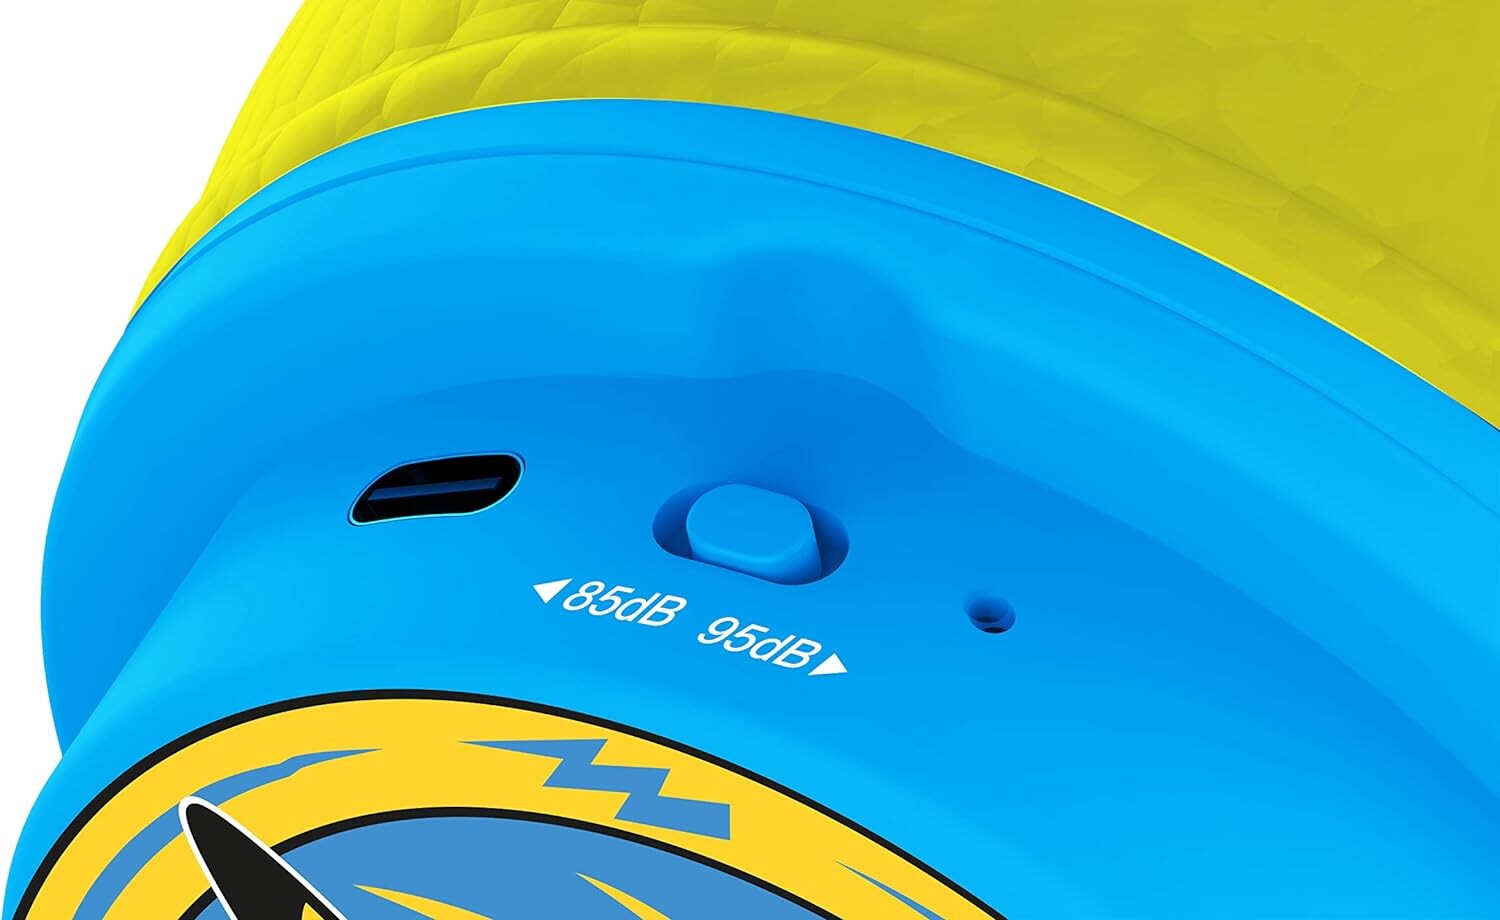 Écouteurs sans fil pour enfants - bleu et jaune